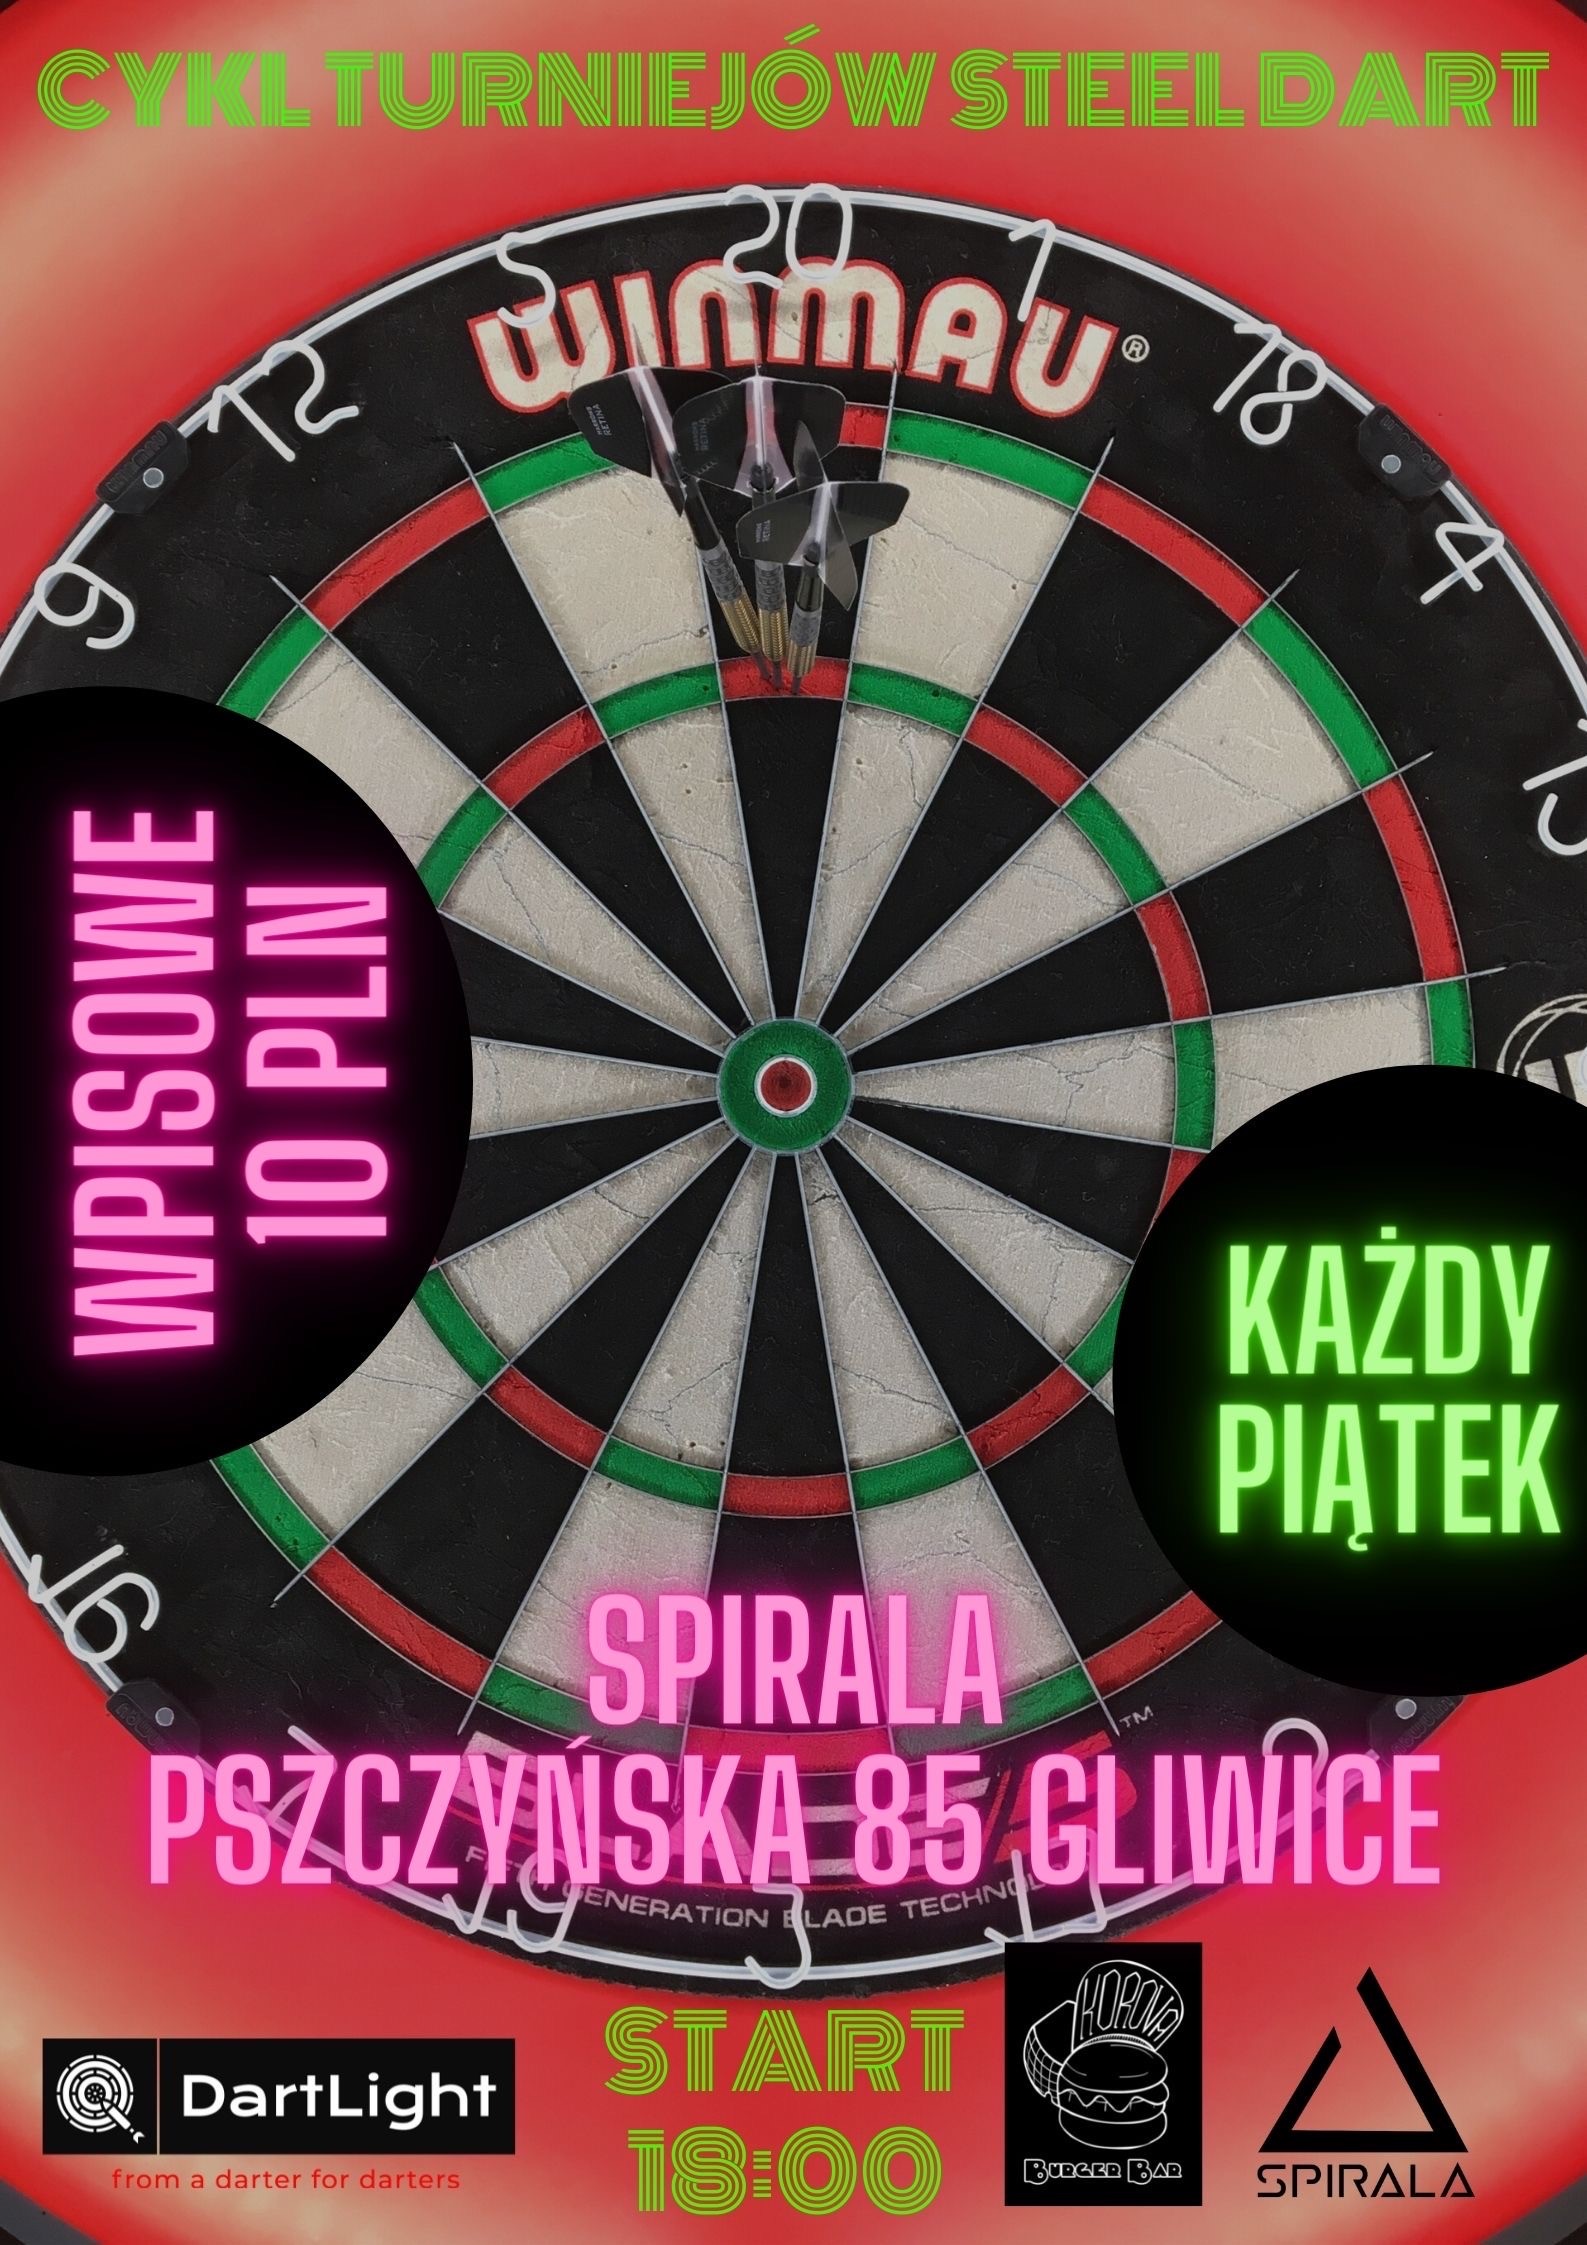 VIII z XV turniej z cyklu Steeldart w SPIRALA Gliwice 18:00 START